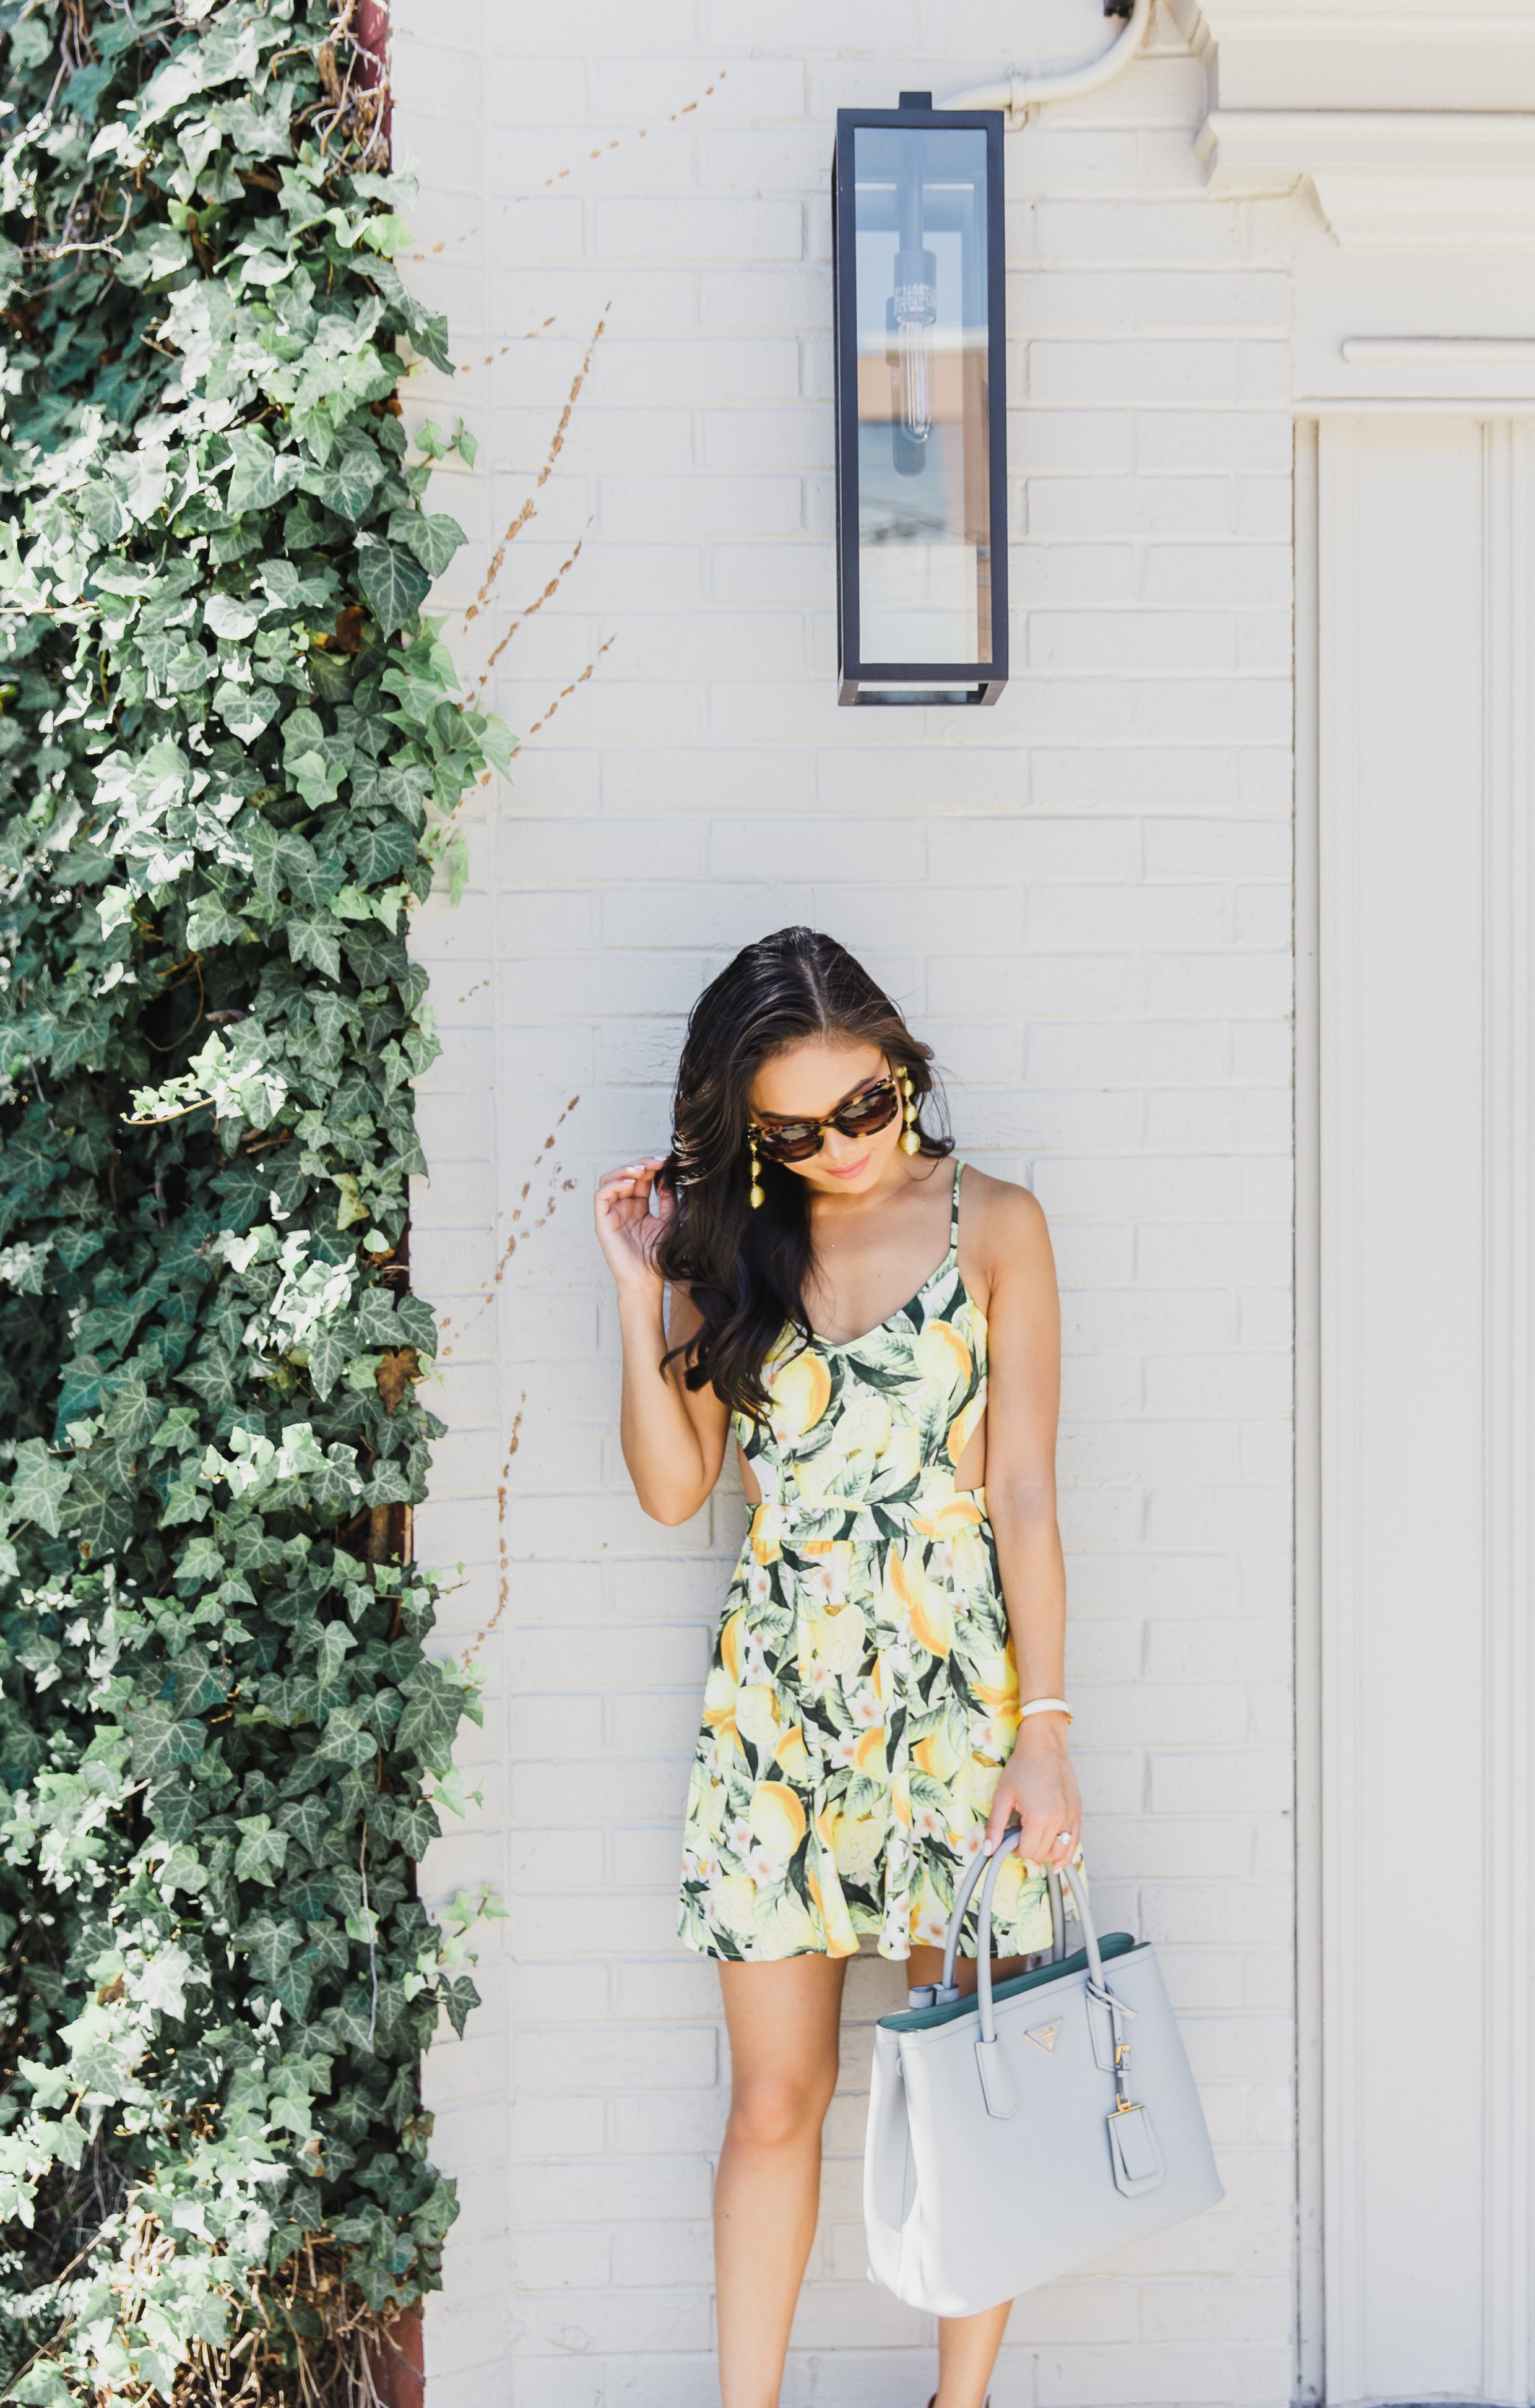 Citrus Love :: Lemon Print Dress with Cutouts - Color & Chic